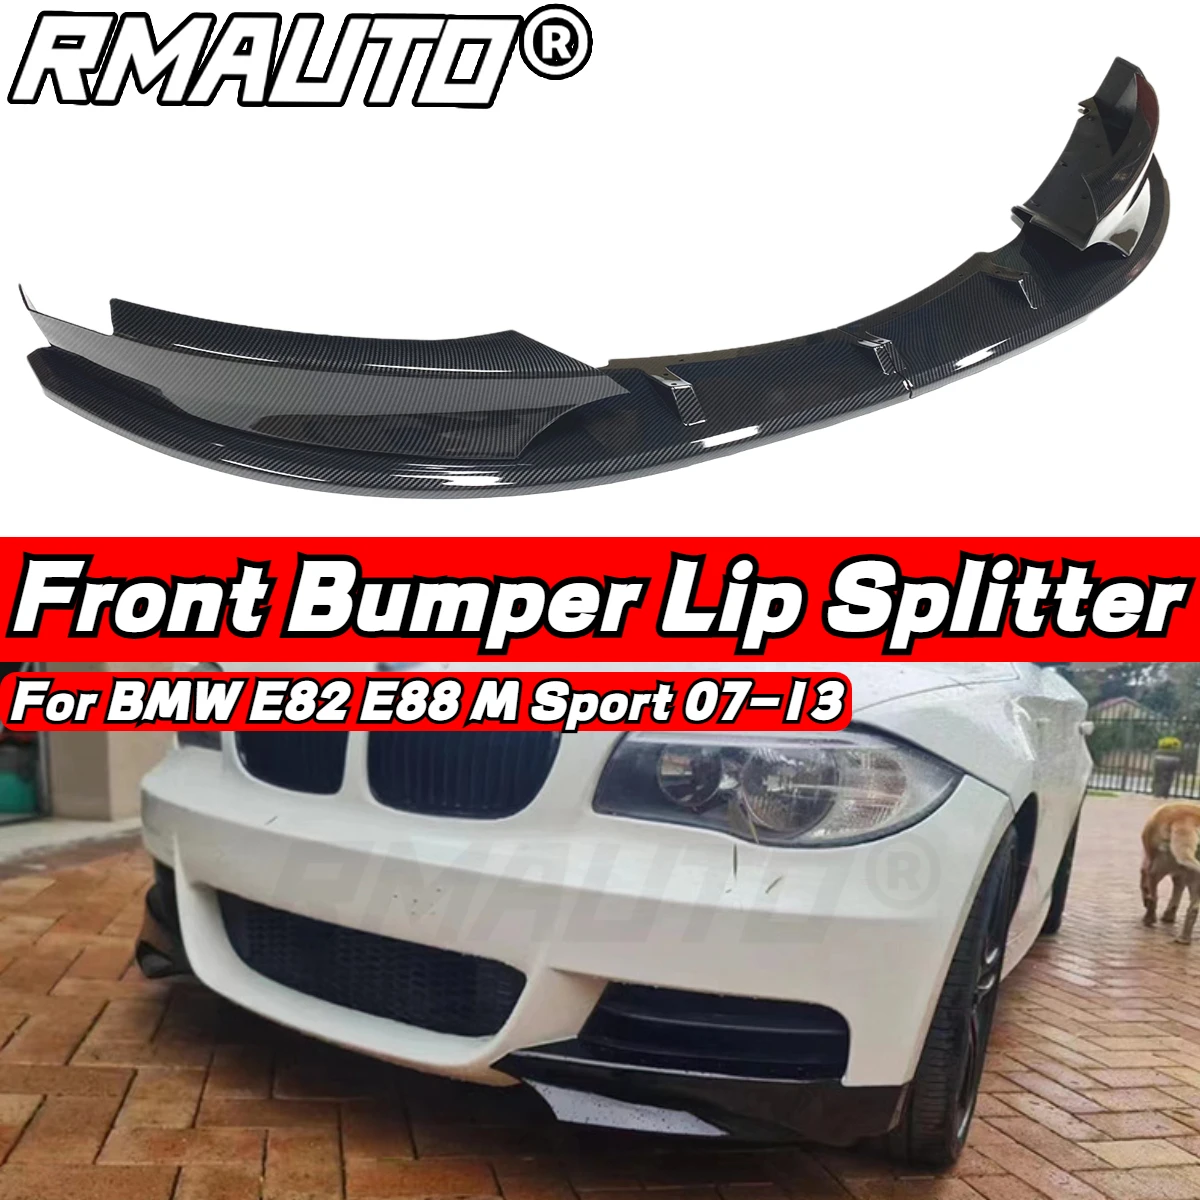 

RMAUTO Carbon Fiber Car Front Bumper Splitter Spoiler Lip Diffuser For BMW 1 Series E82 E88 M Sport 2007-2013 Splitter Diffuser